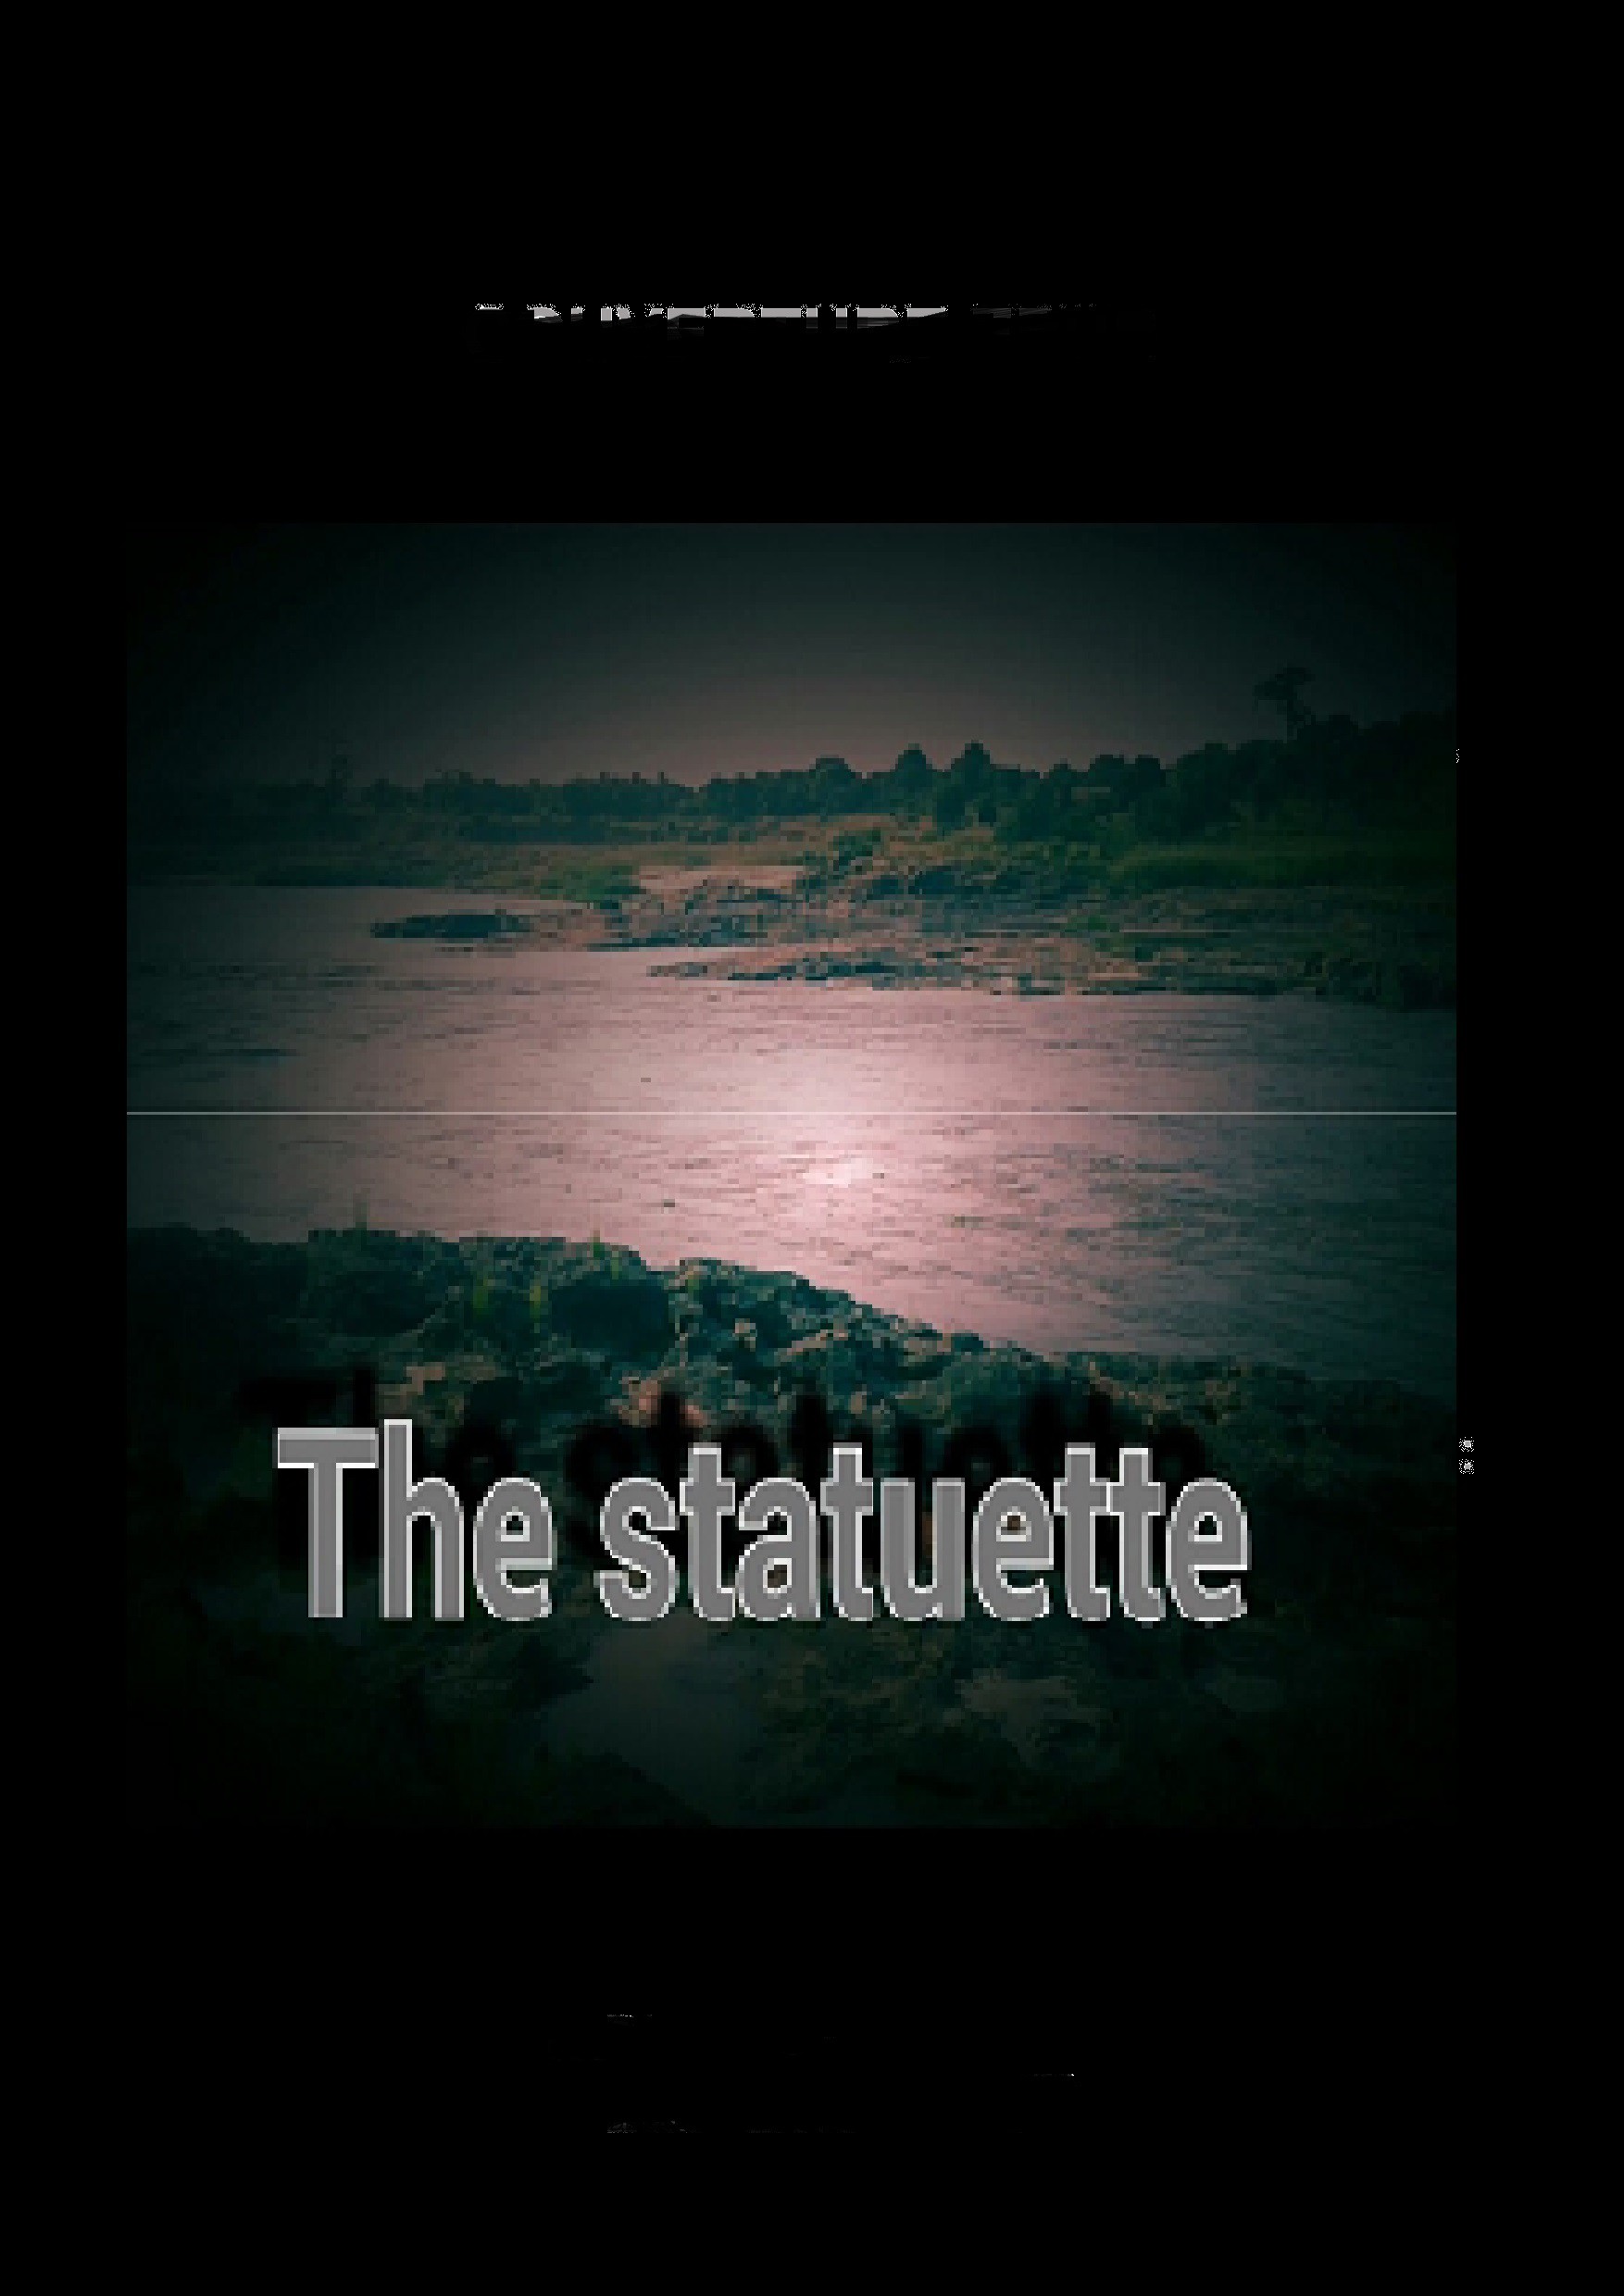 The statuette